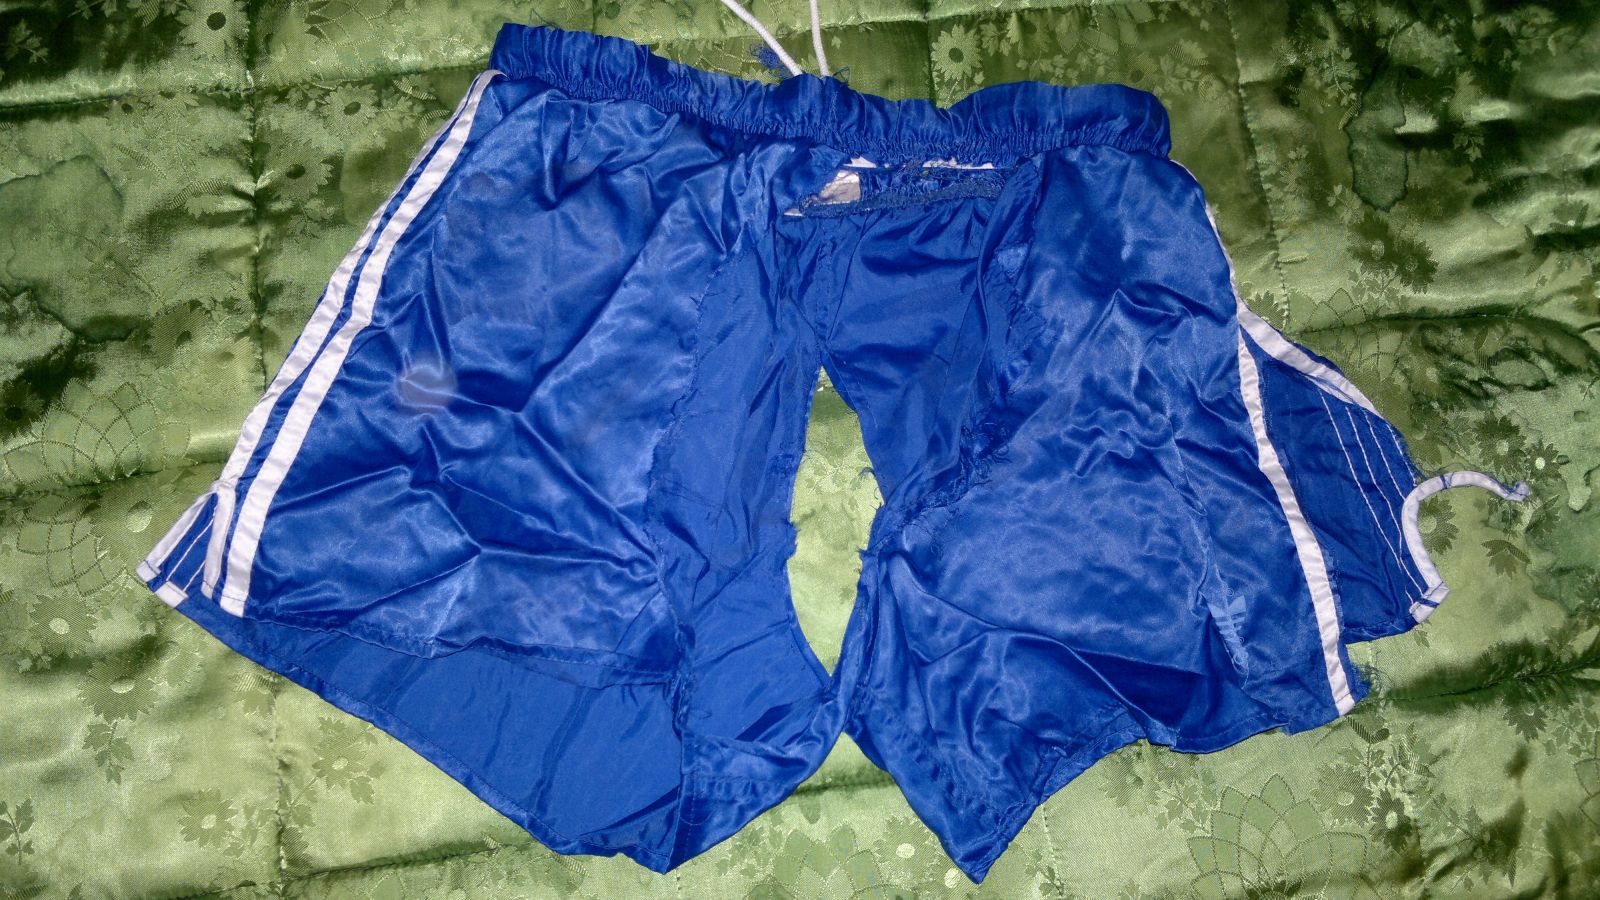 Blaue Adidas shorts Satin Von Mir Behandlung Teil1 RIPPING 4